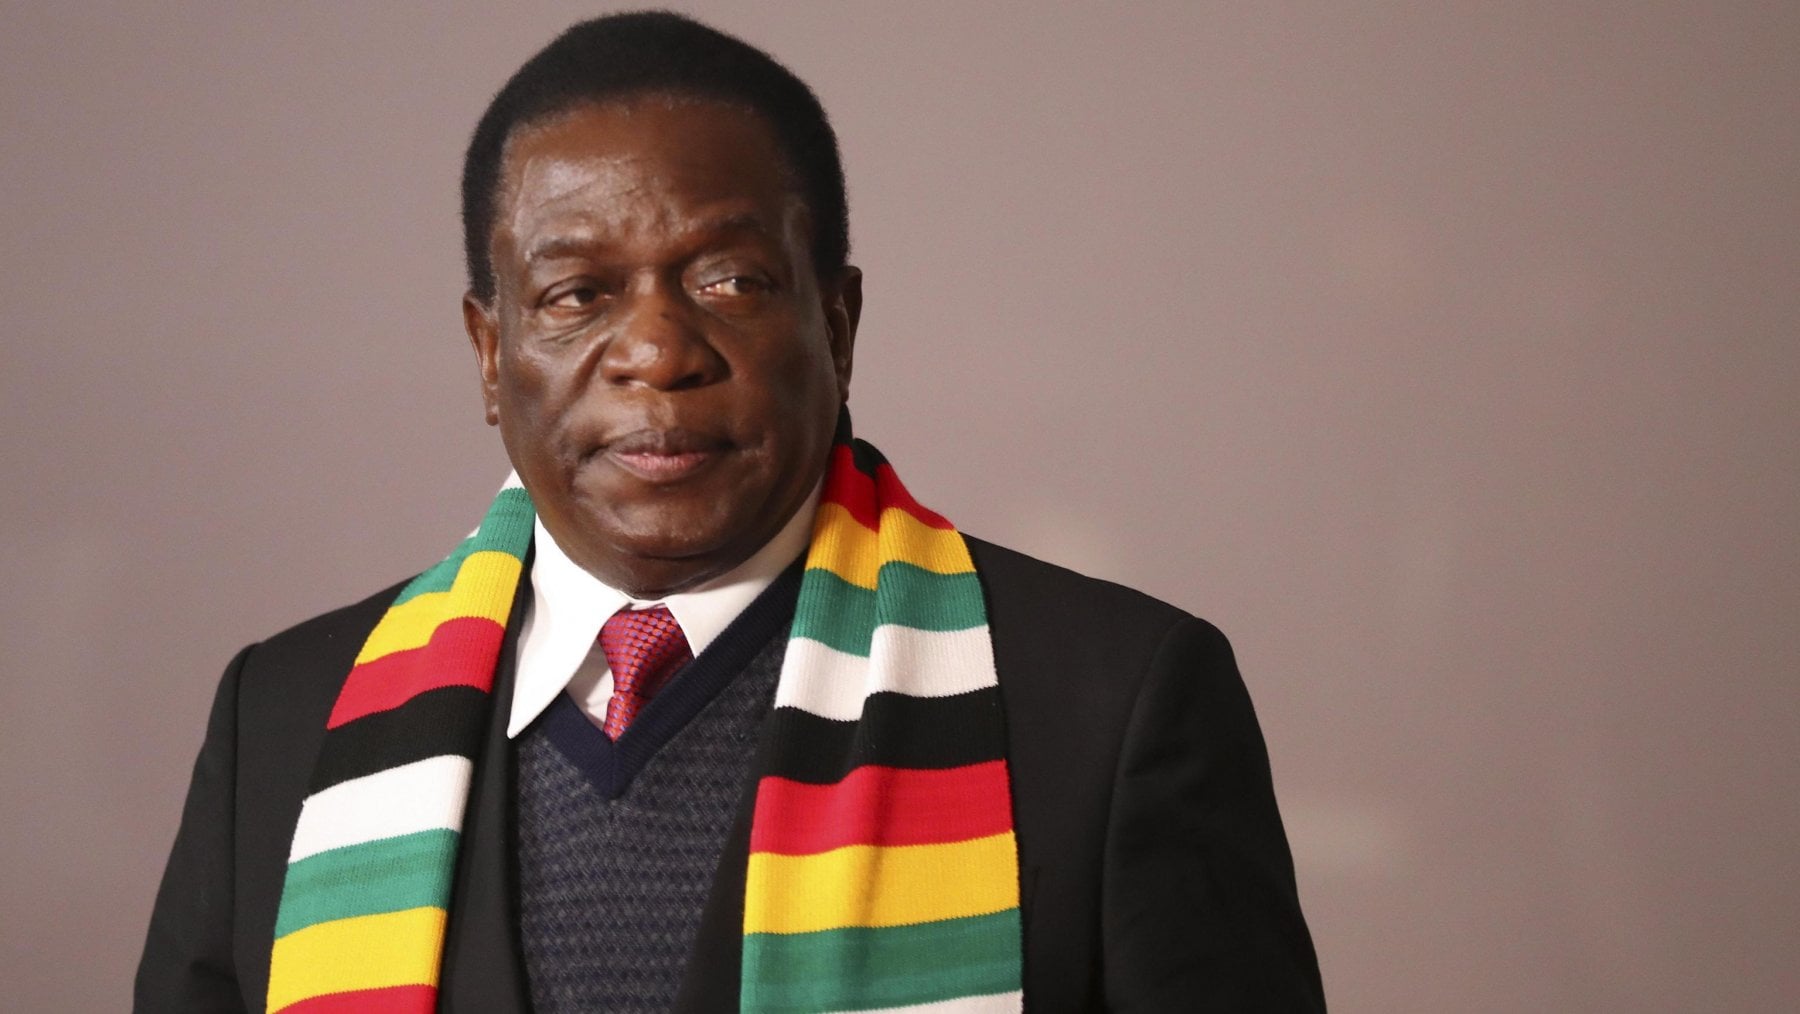 Zimbabwe: elezioni suppletive previste a marzo, in attesa di quelle “in armonia” nel 2023